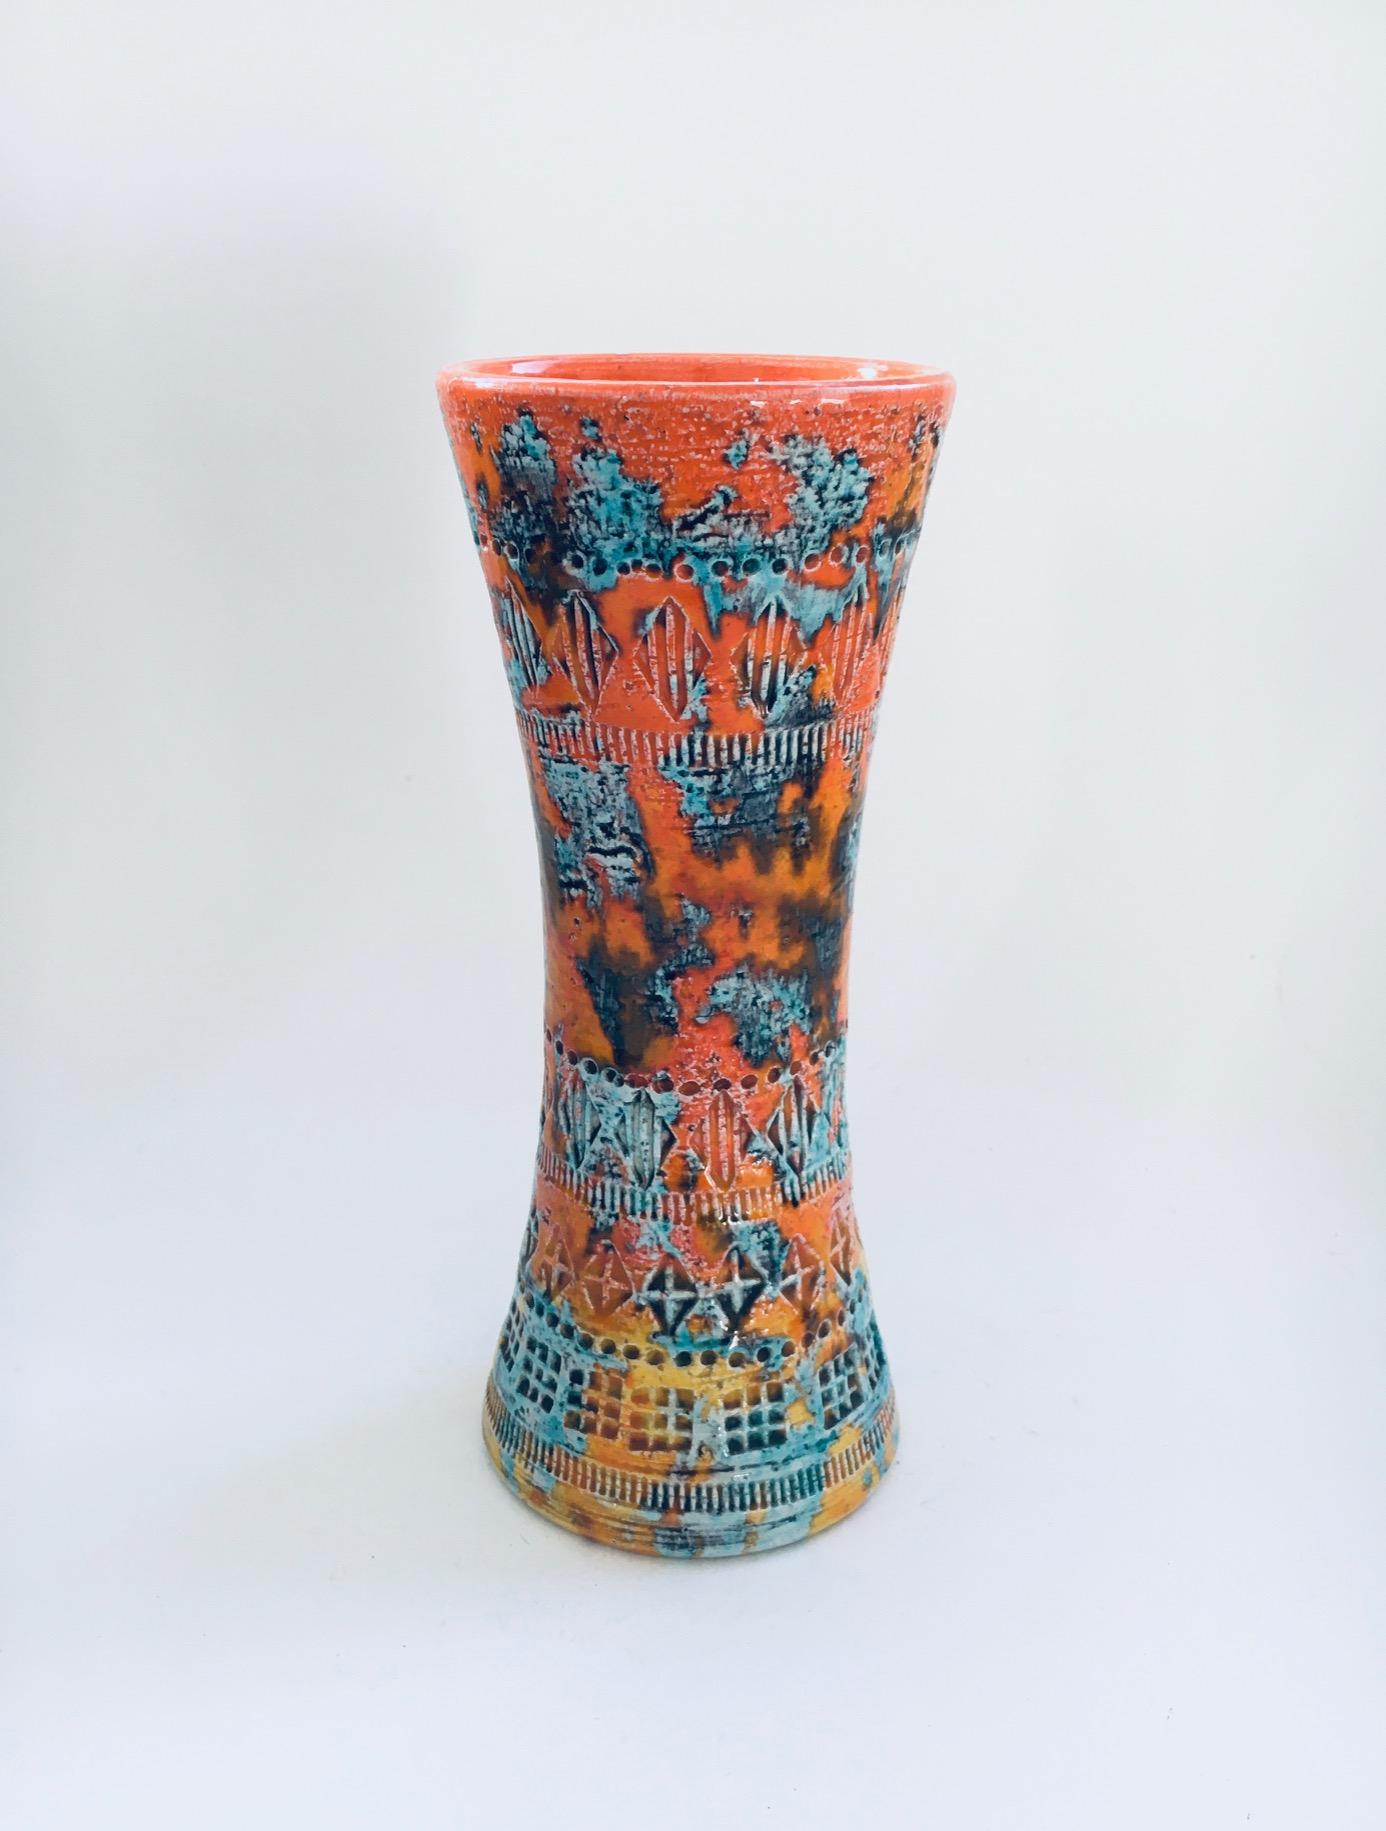 Vintage Art Ceramics Rare Trumpet Vase in Sunset Glaze von Aldo Londi für Bitossi. Hergestellt in Italien, 1960er Jahre. Orange-gelbe Unterglasuren mit grünlichen Überglasuren und den für Bitossi typischen geometrisch geprägten Formen. Markiert auf